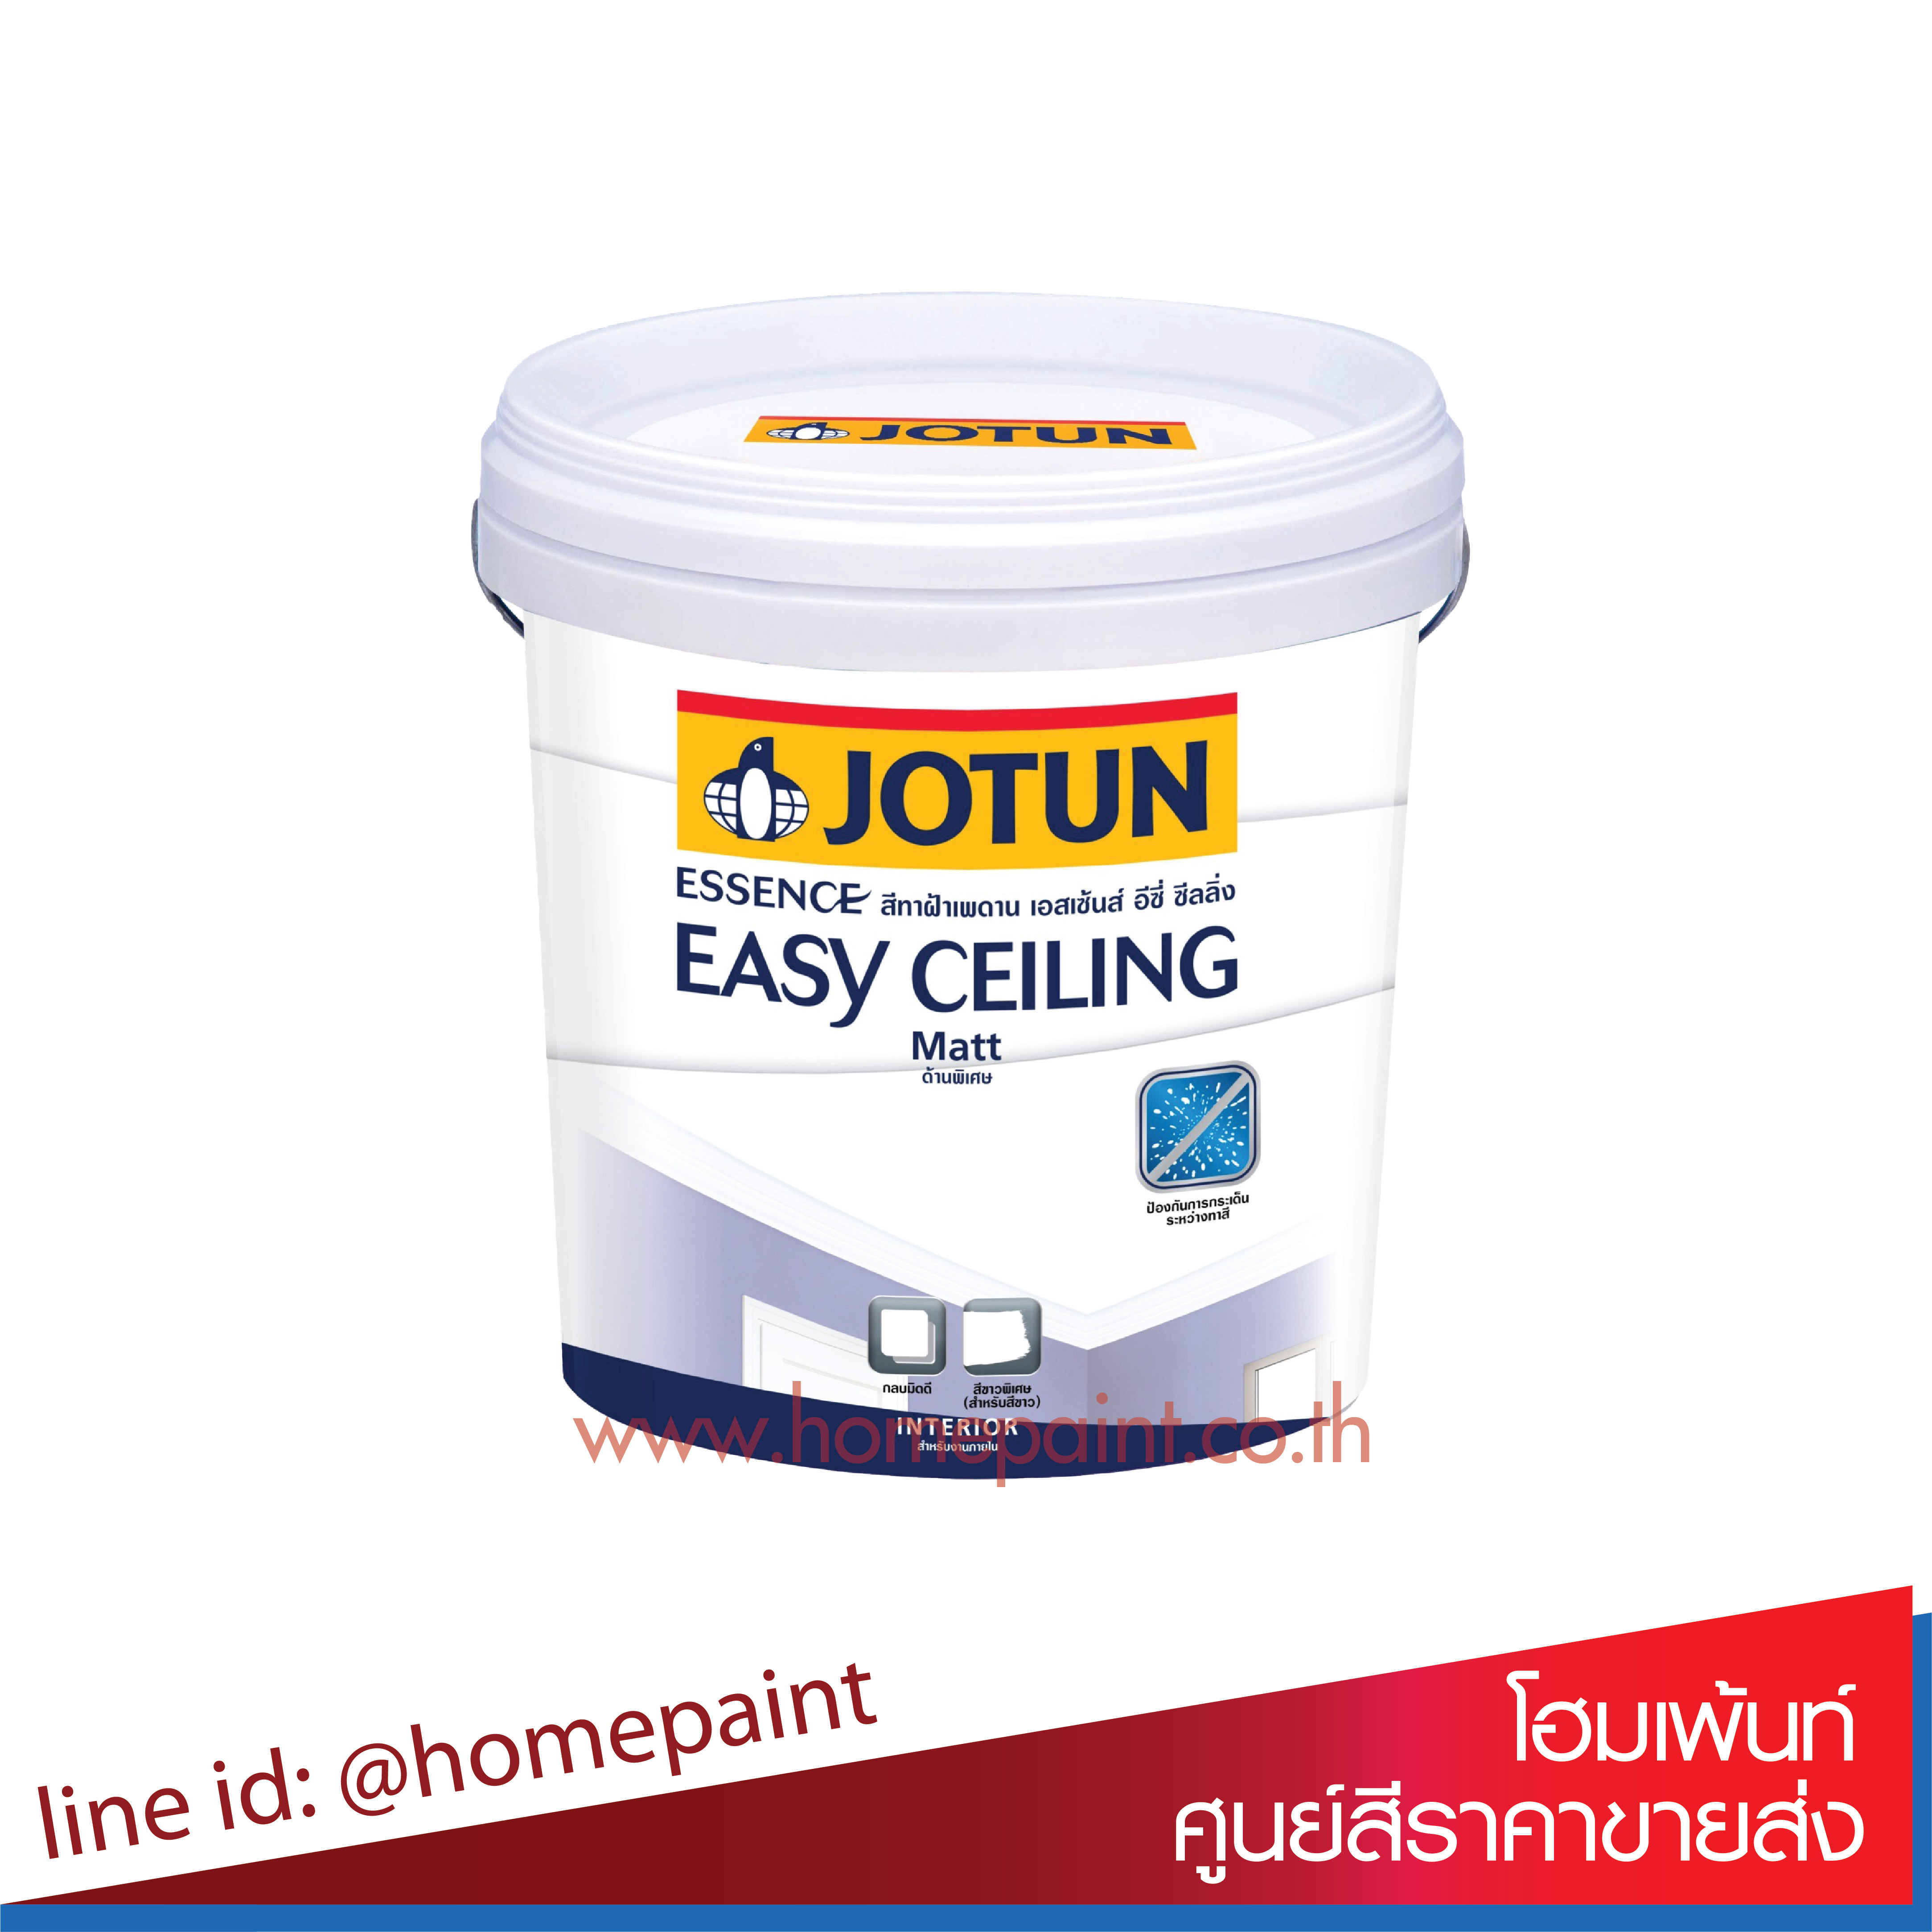 โจตัน เอสเซ้นส์ อีซี่ ซีลลิ่ง สีทาฝ้าเพดาน สีขาวหมอก 4352 / Jotun Essence Easy Ceiling Matt